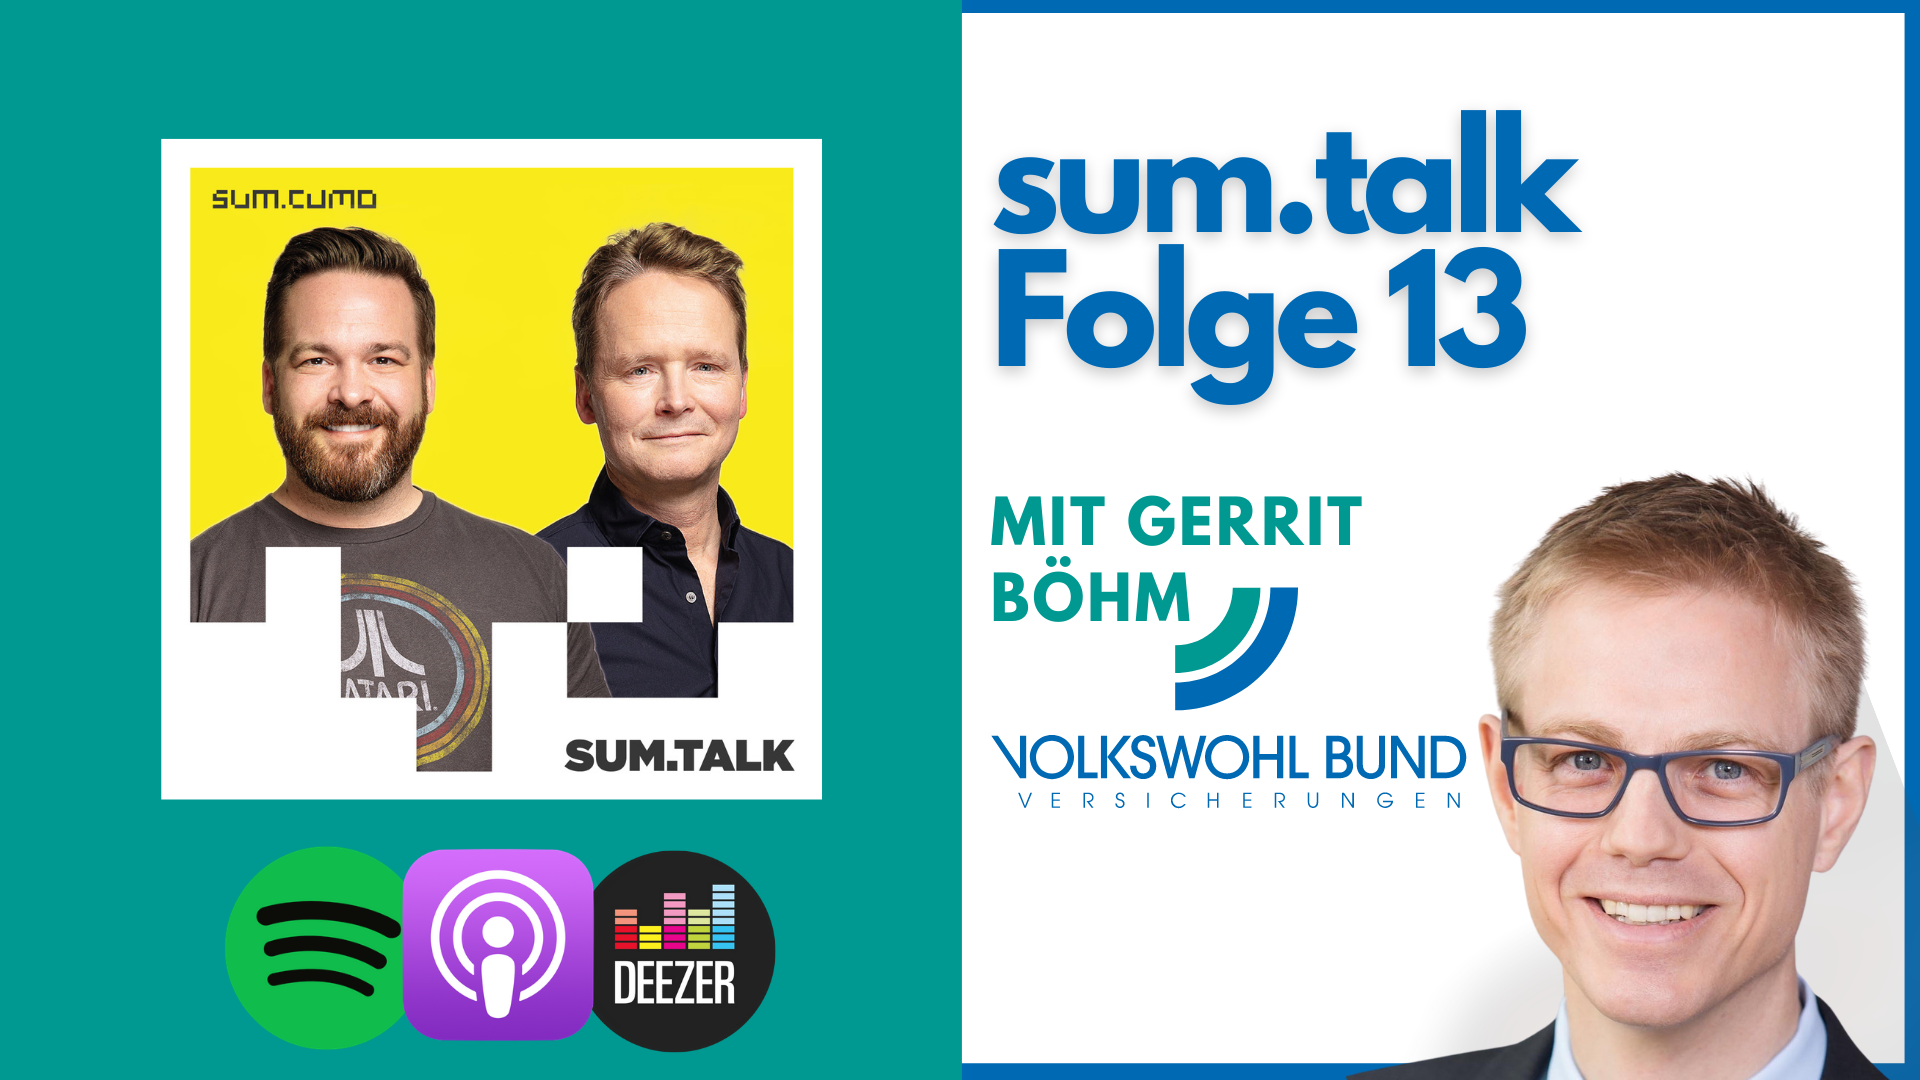 sum.talk Folge 13: Versicherungsverein – Fluch oder Segen? (Mit Gerrit Böhm, Vorstandsmitglied, Volkswohl Bund Versicherungen)